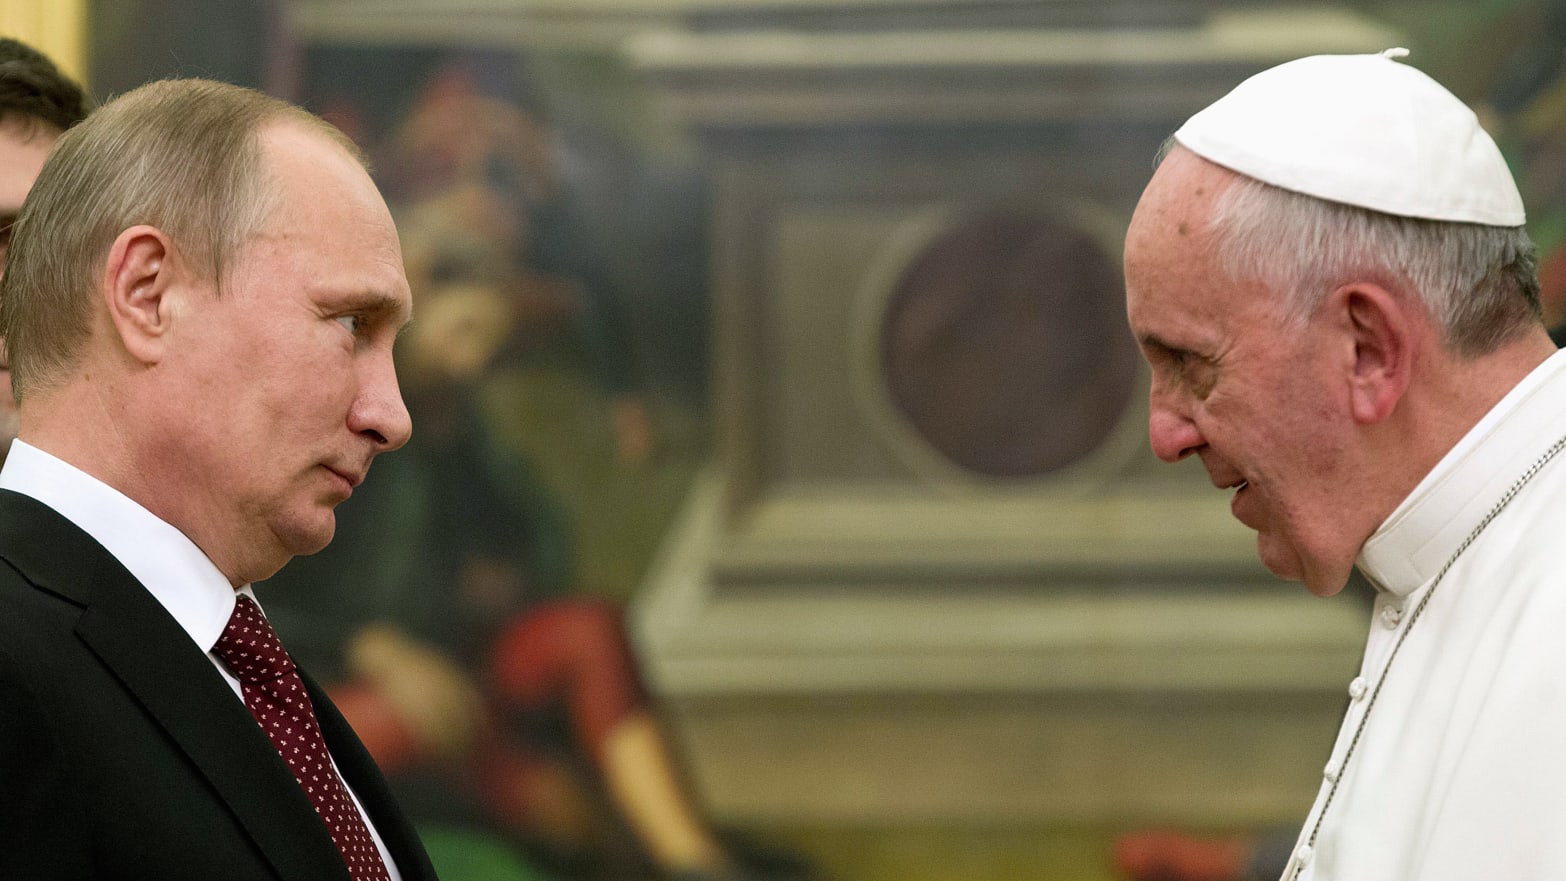 Papa Franjo nakon sastanka sa Orbanom krenuo braniti Putina 2013-11-25T120000Z_440262432_GM1E9BQ08KE01_RTRMADP_3_POPE_ayltvh